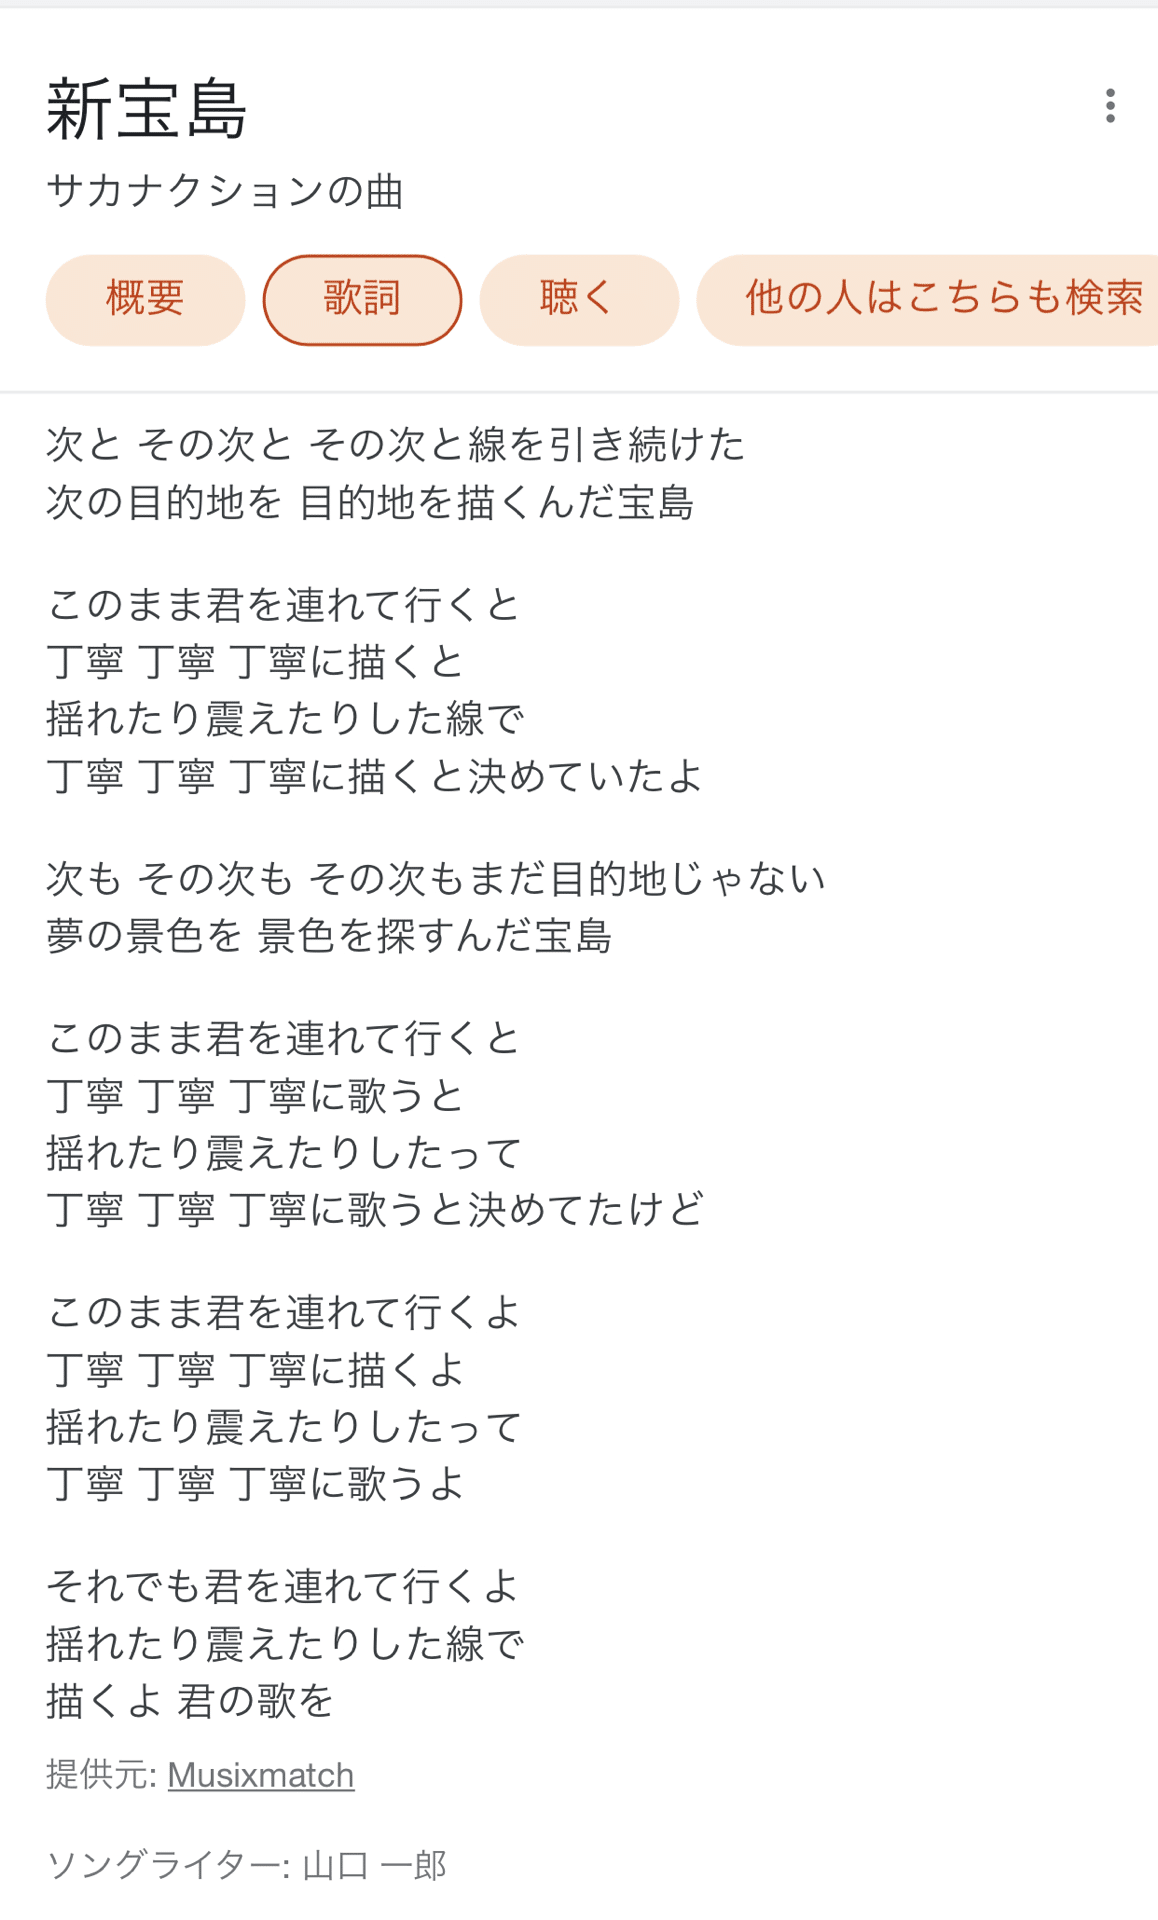 サカナクション 新宝島 の歌詞分析 Suzuki Takami 鈴木隆美 Note